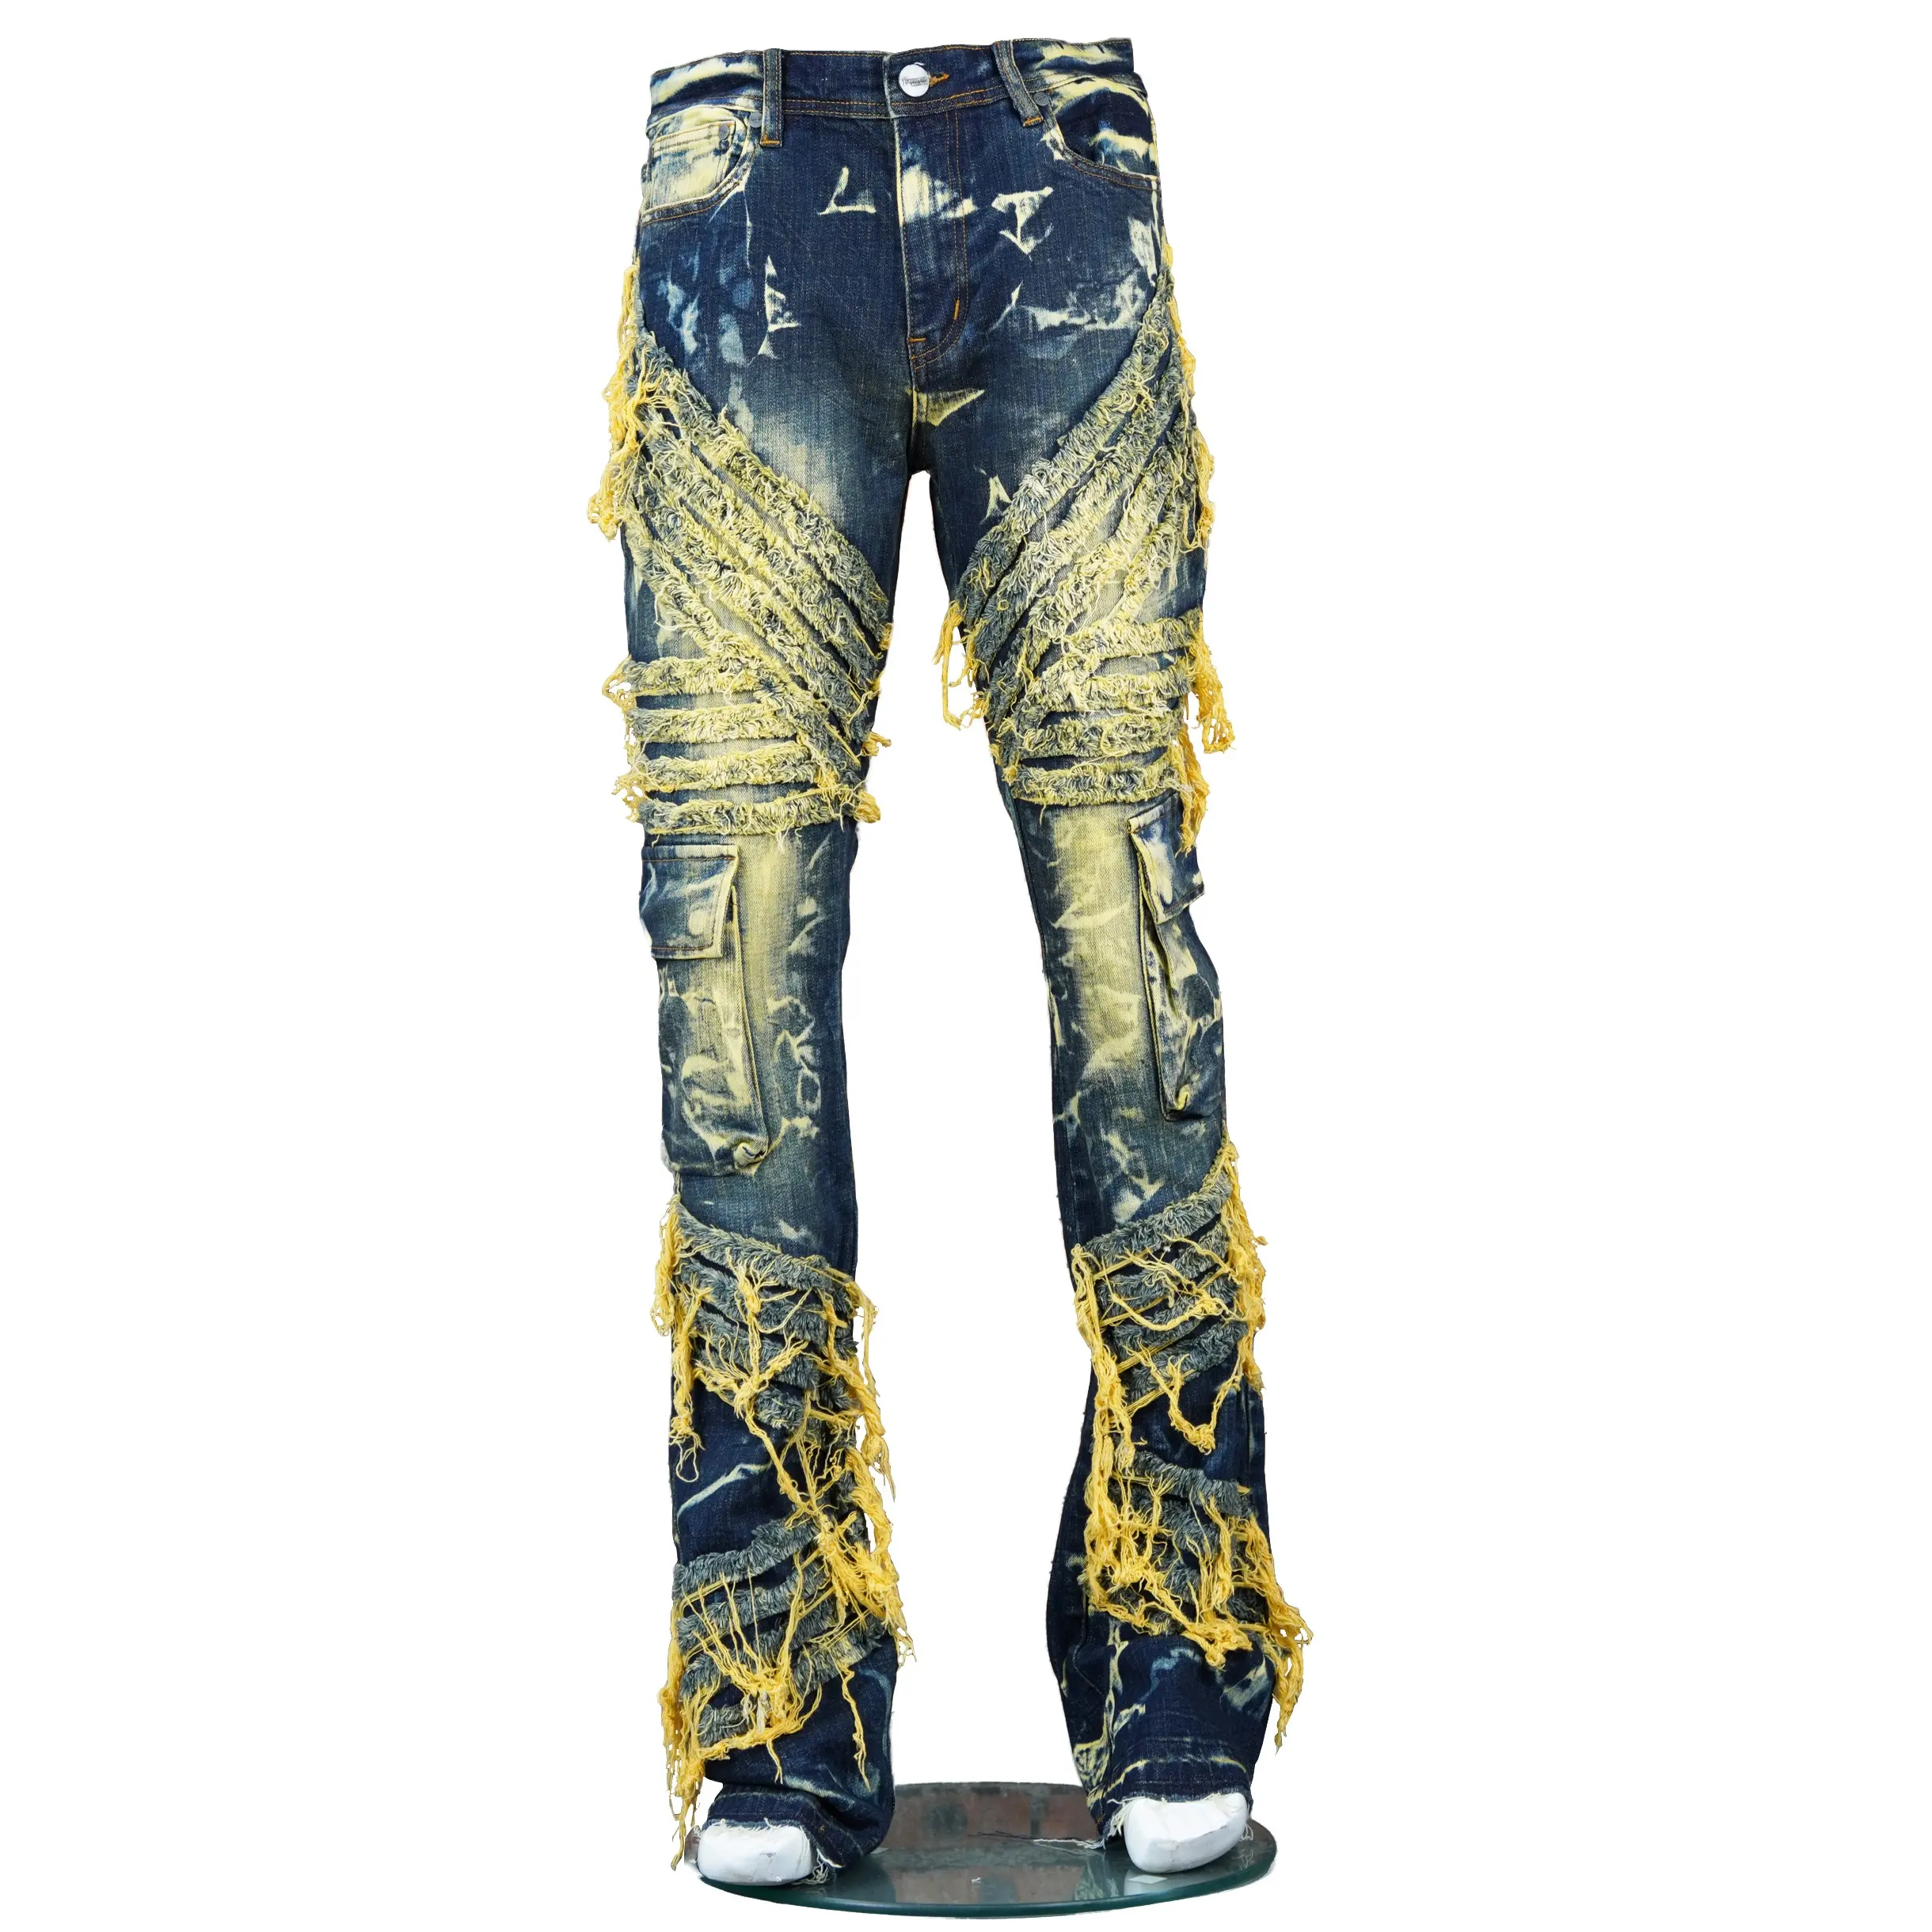 Direktverkauf vielseitige dunkelblaue Jeans gerader Herrenjeans mit mehreren Taschen mehrere Farben Jeans verfügbar